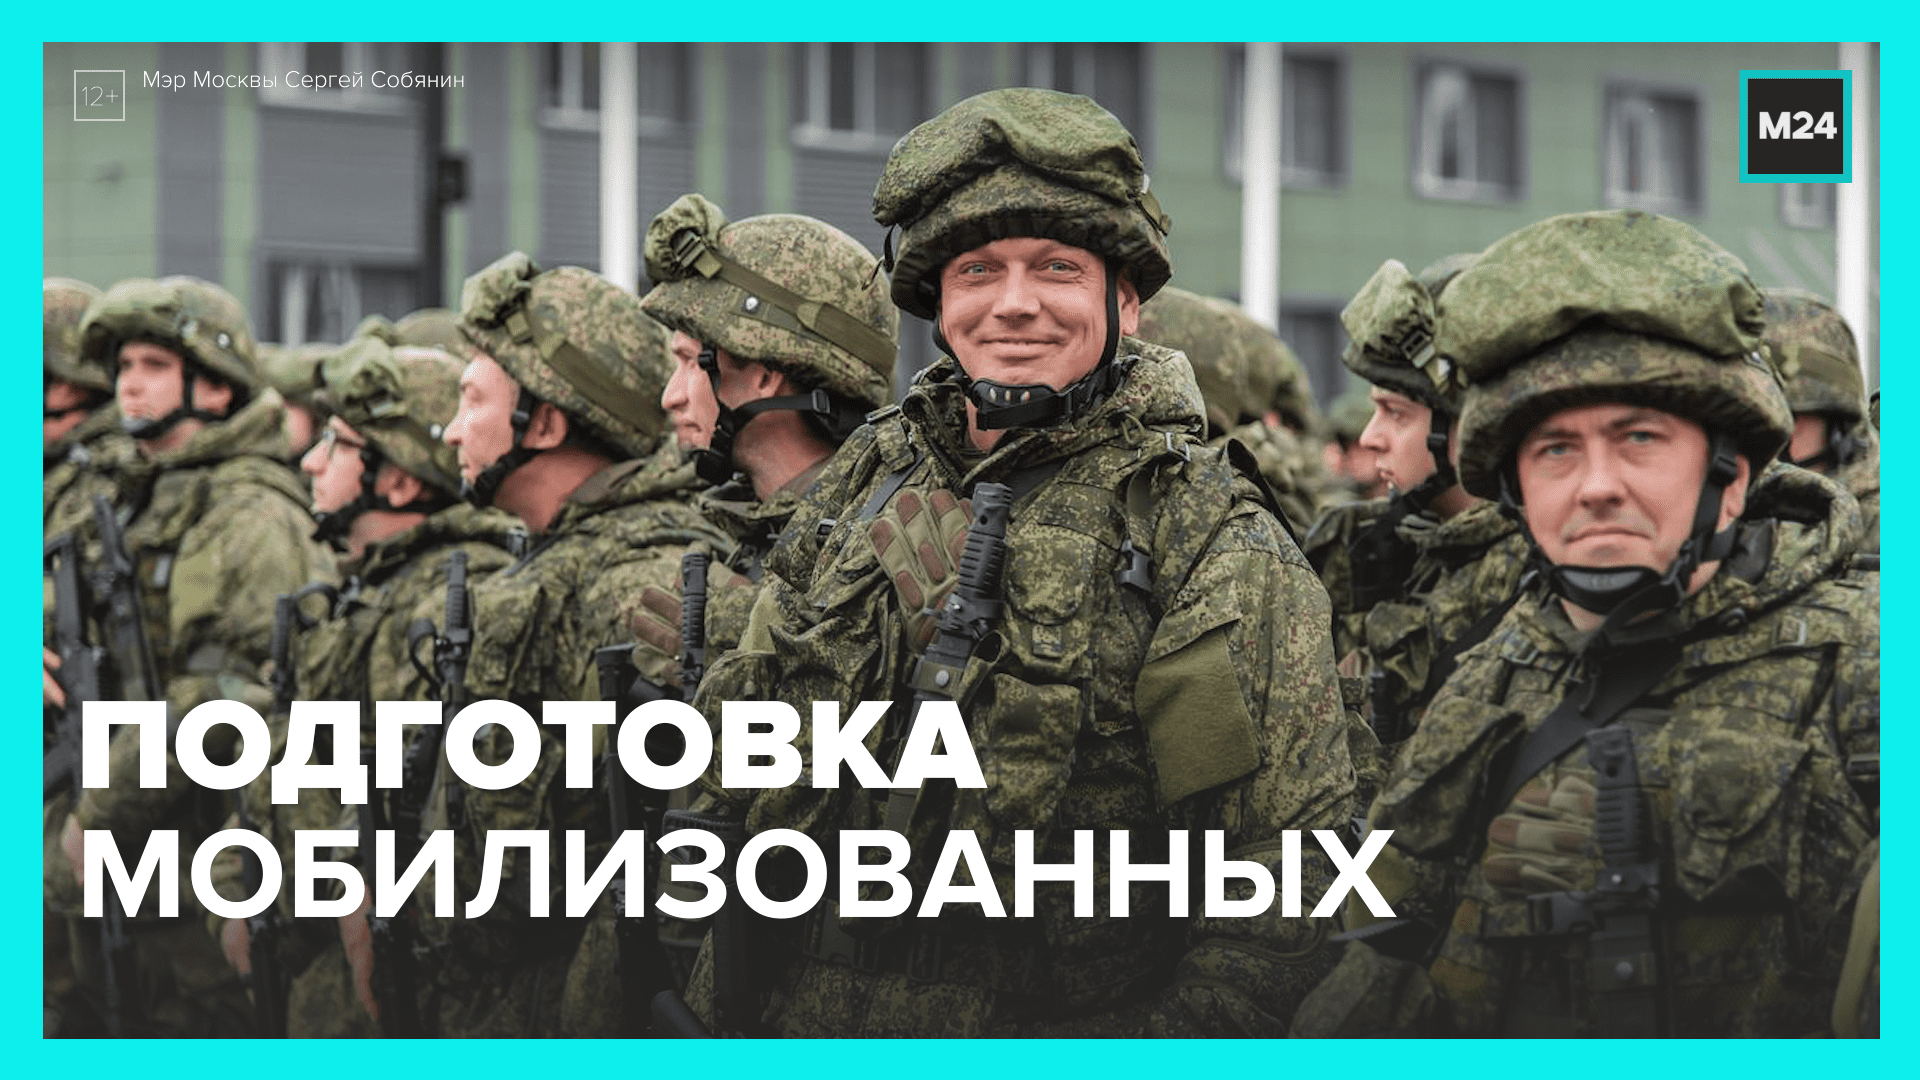 Сдвиг начала осеннего призыва не повлияет на сроки увольнения отслуживших военнослужащих – Москва 24